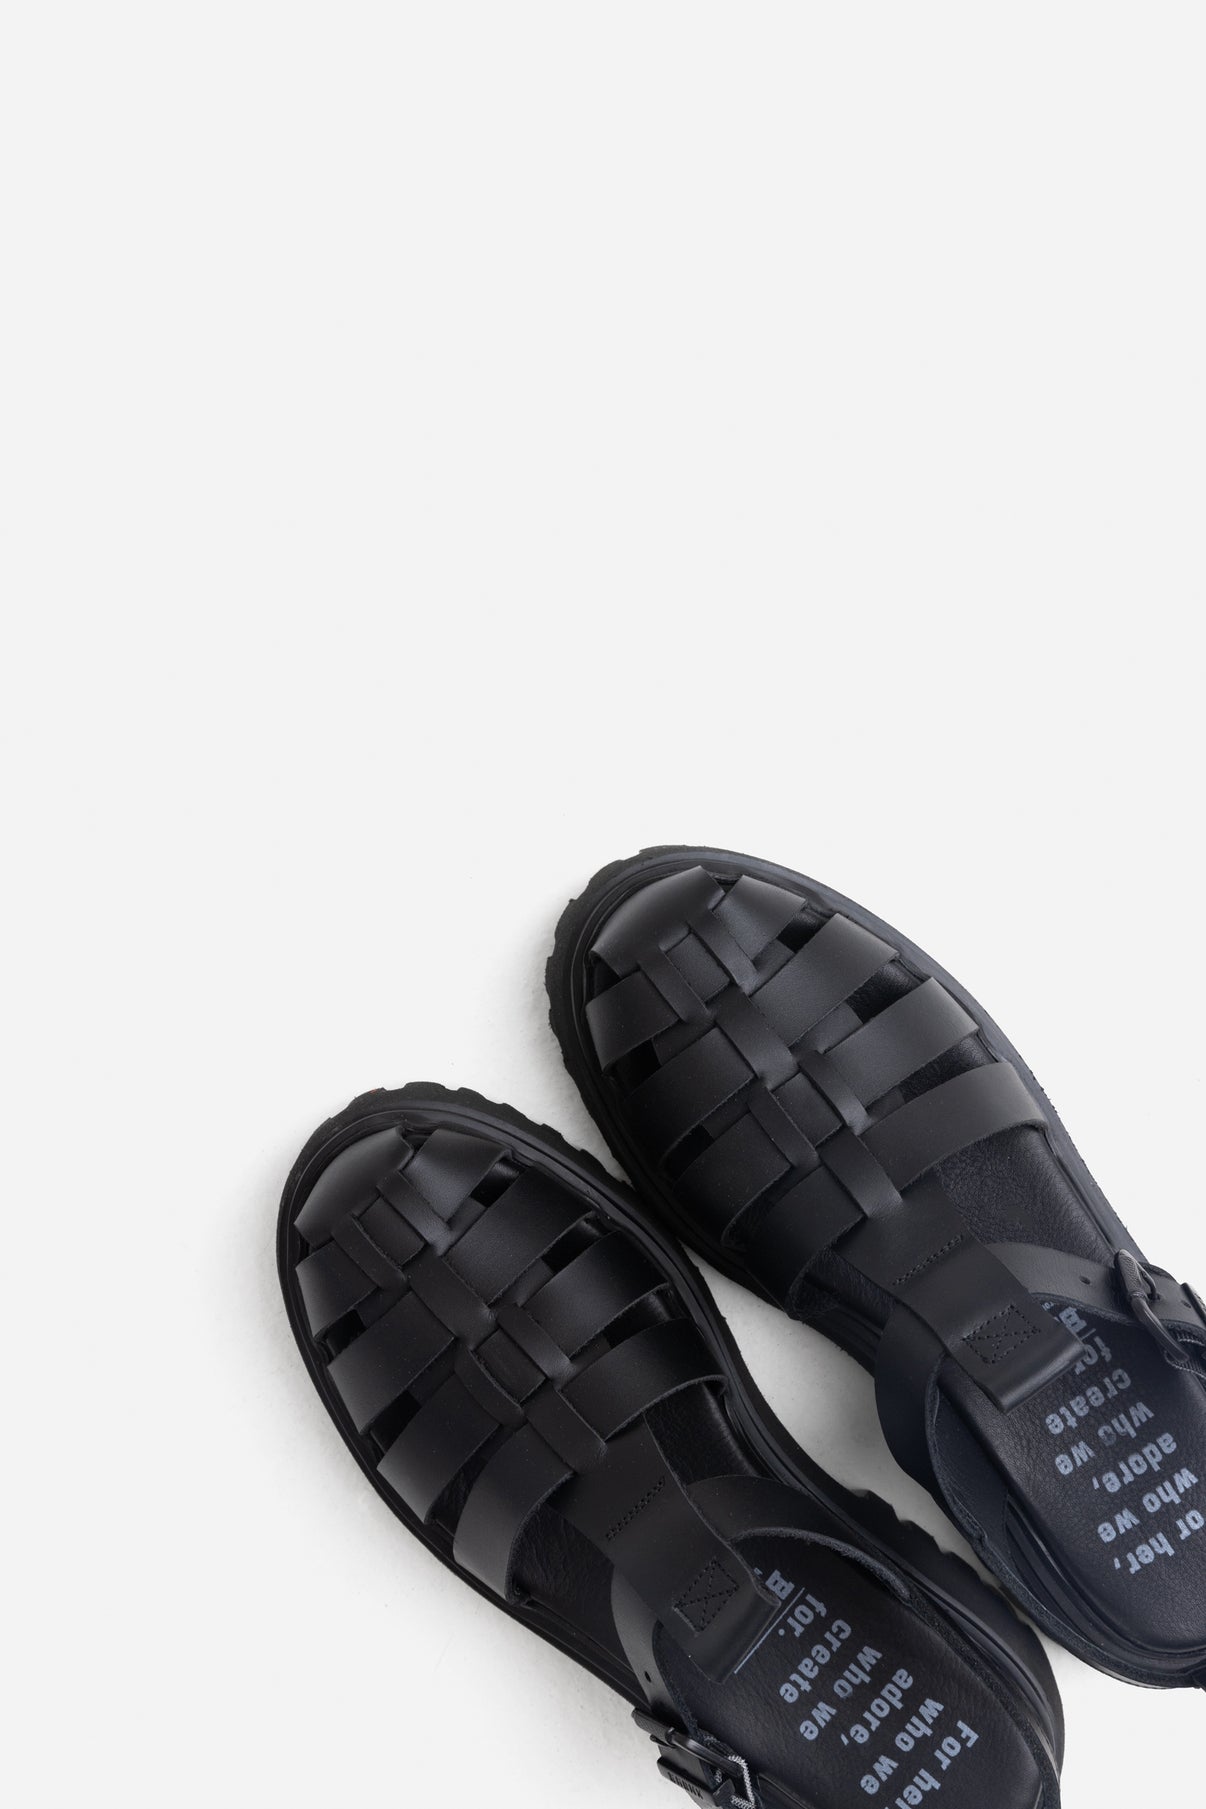 Groovy Black Chunky Sandals 84973-A-01-4